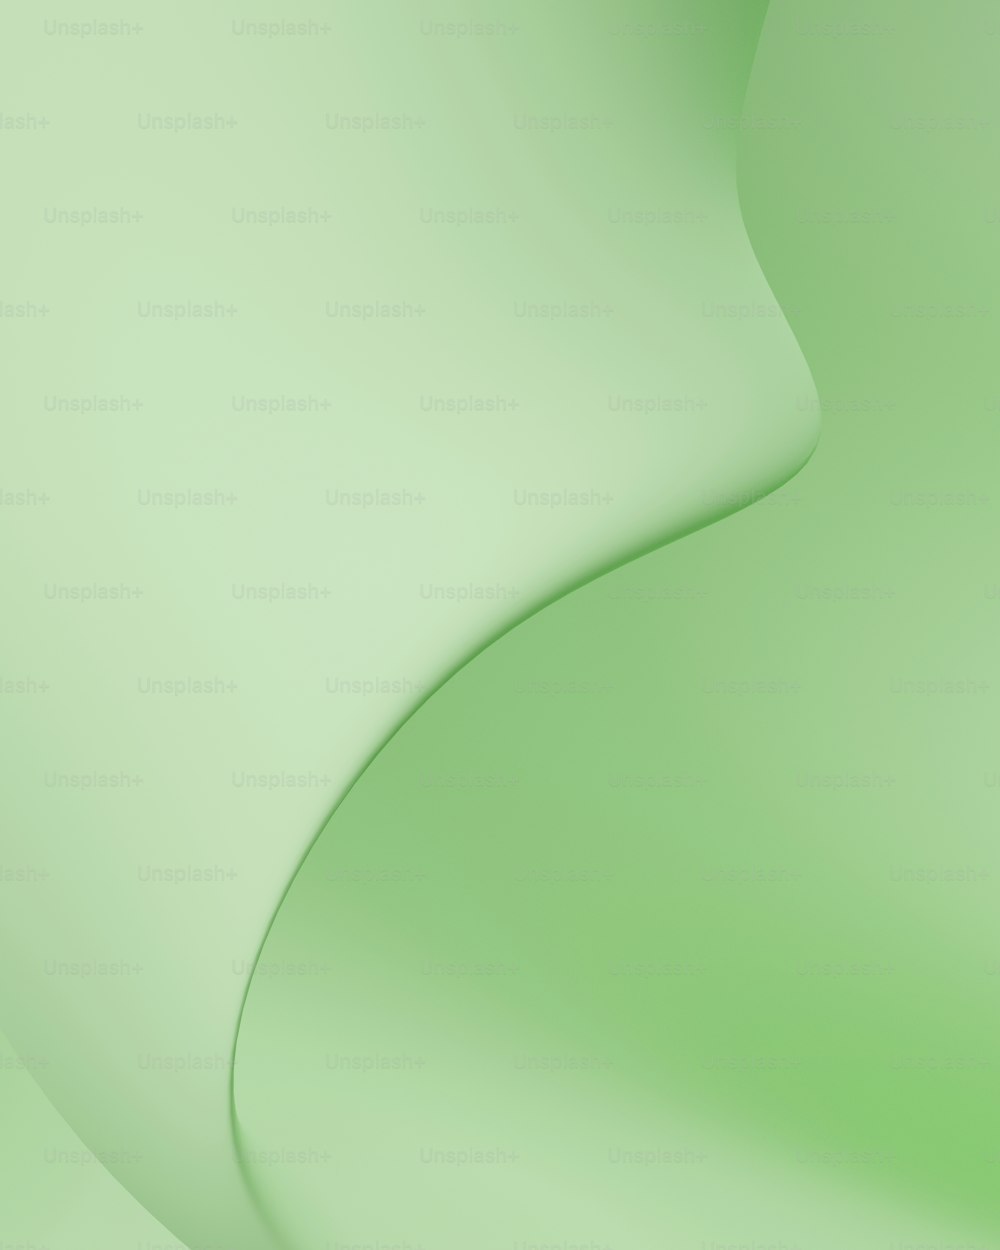 um fundo verde com uma curva curva